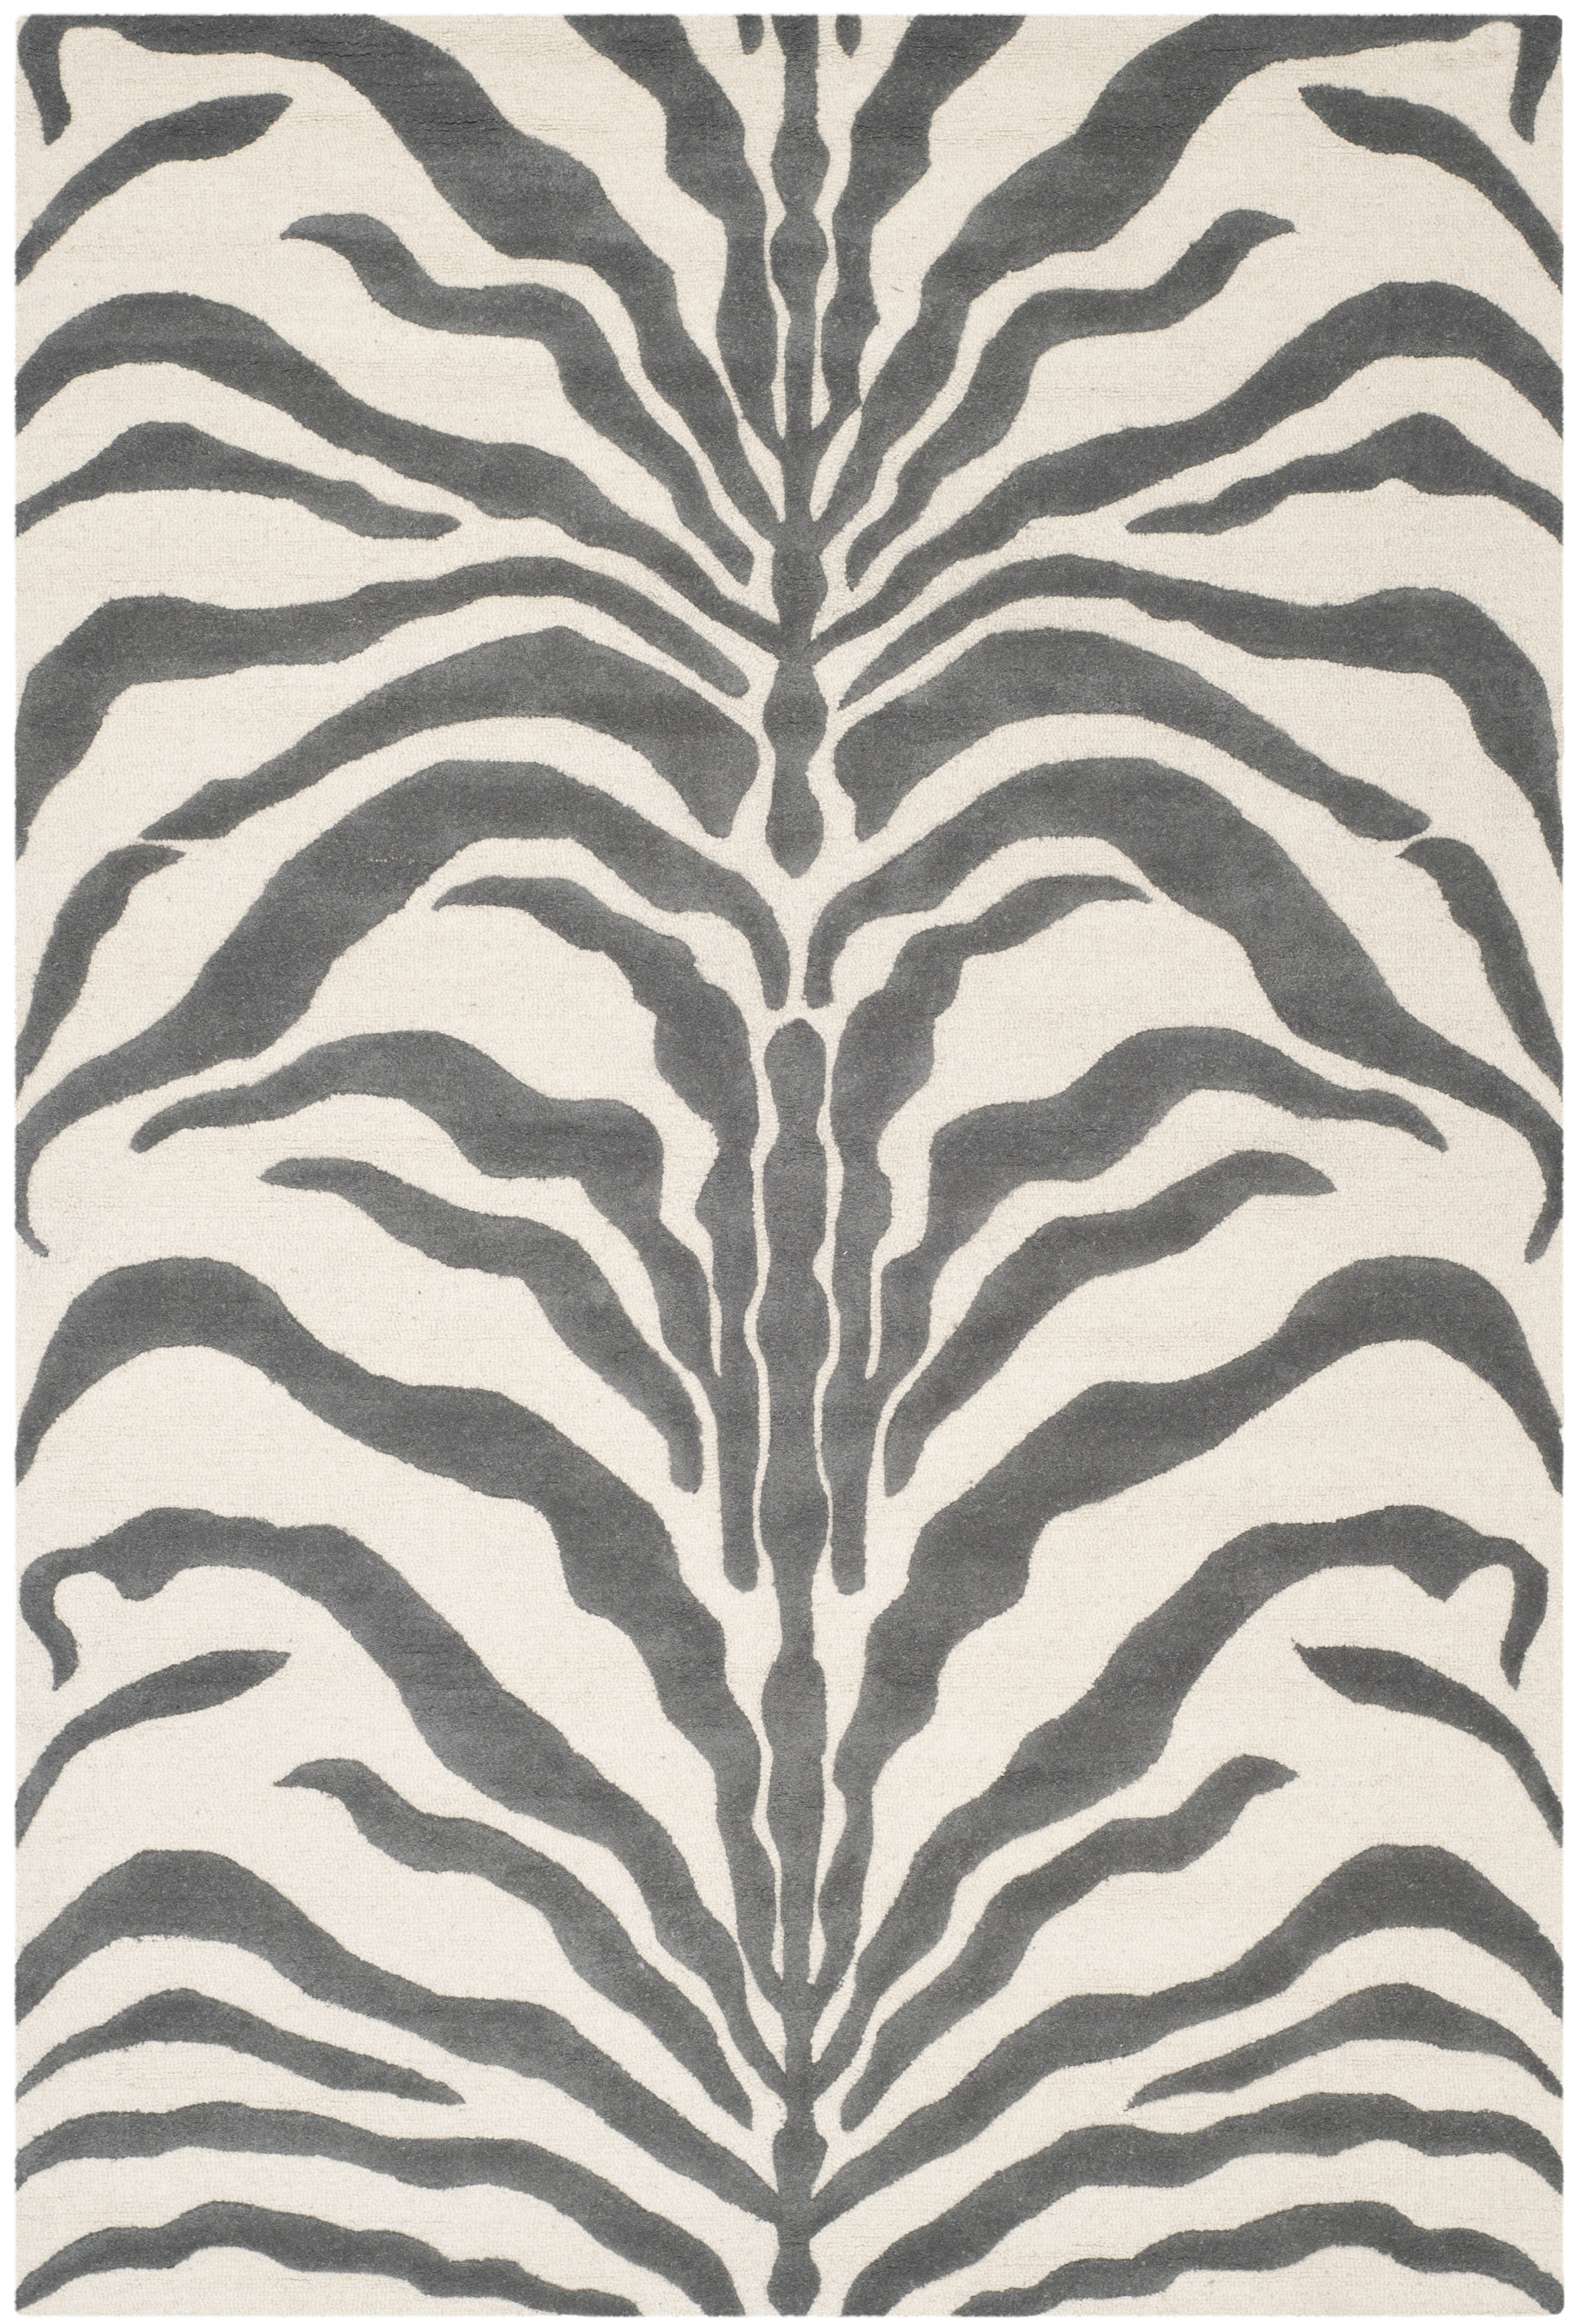 Tapis de salon interieur en ivoire & gris fonce, 183 x 274 cm